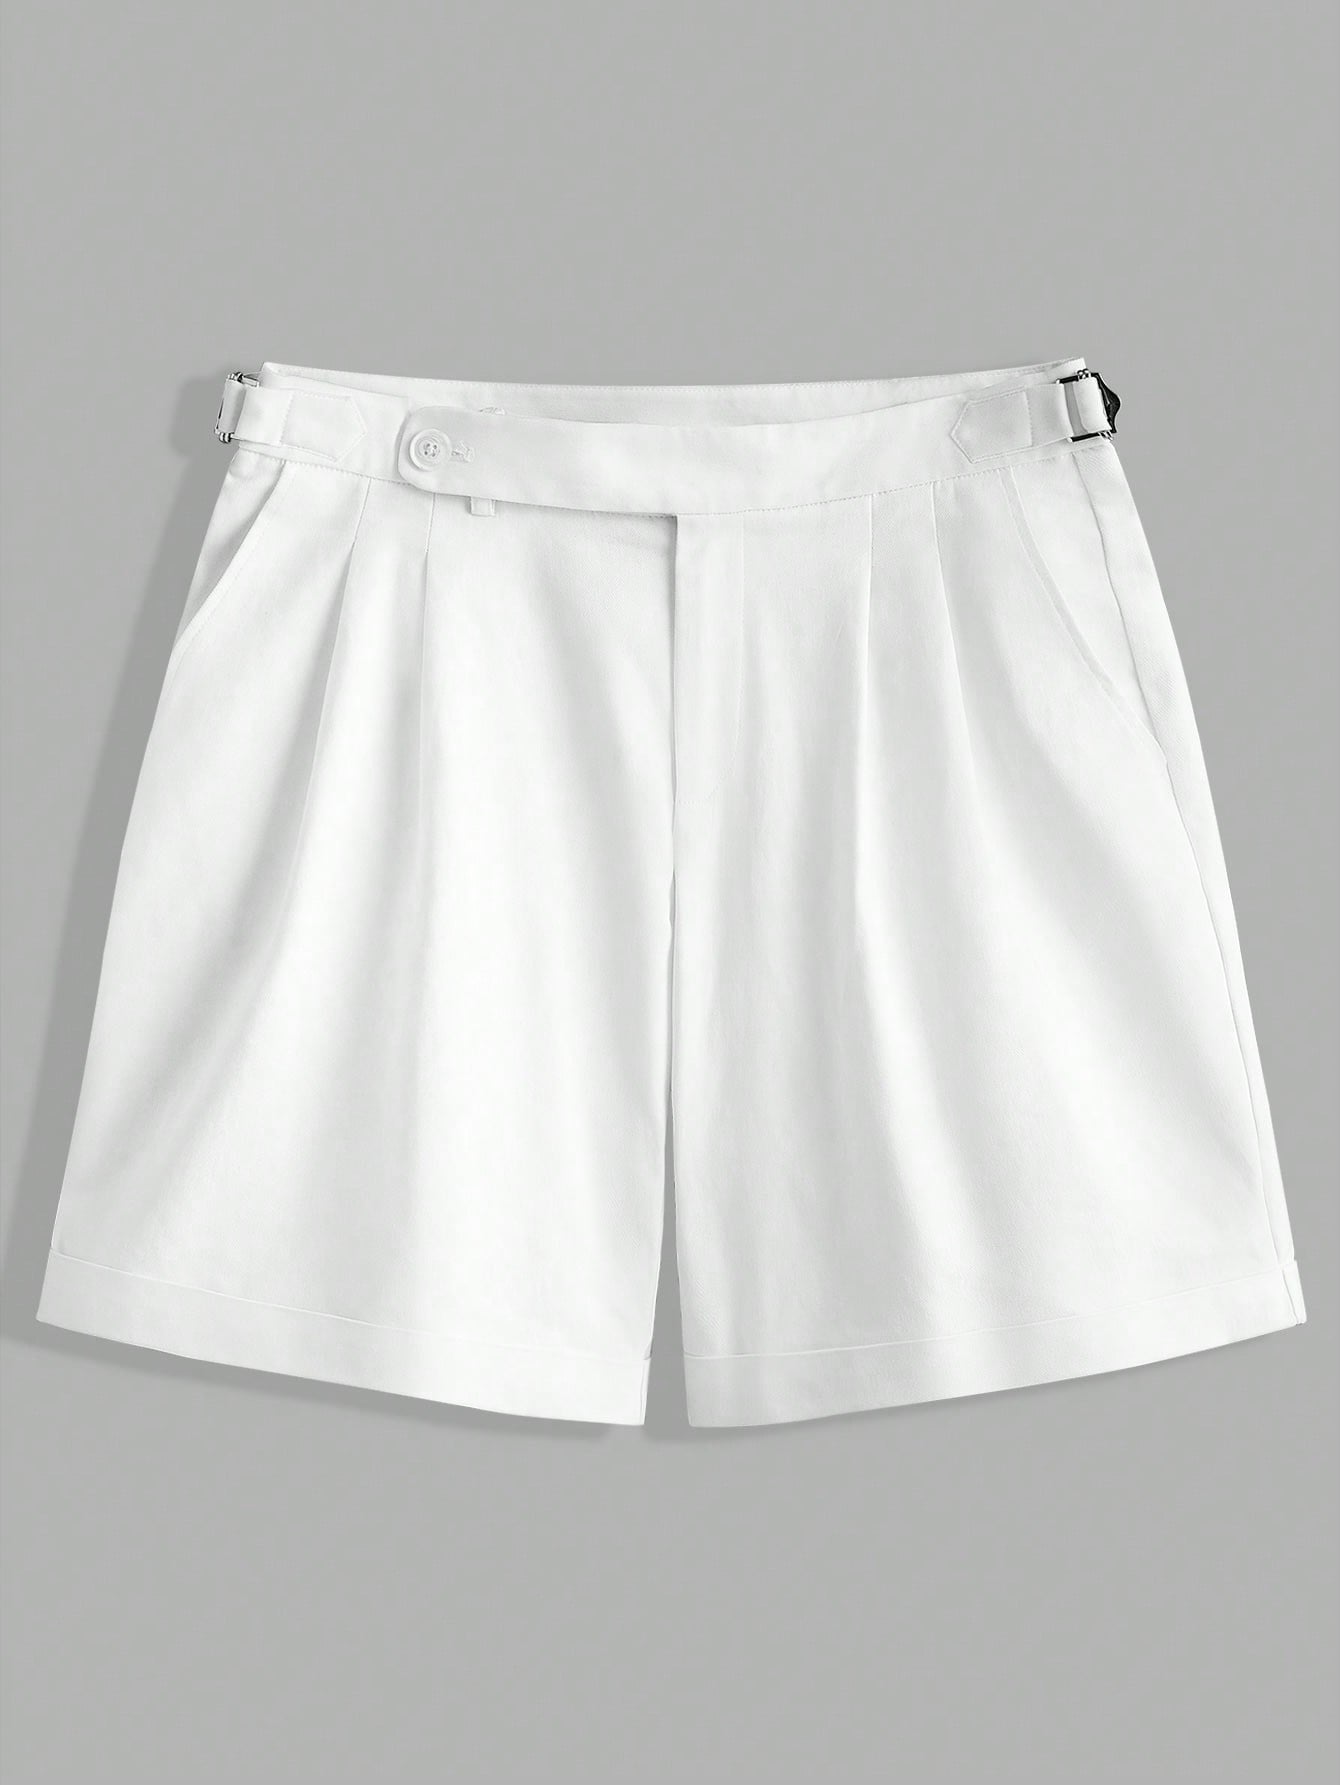 Мужские повседневные шорты Manfinity Mode из однотонной ткани со складками, белый